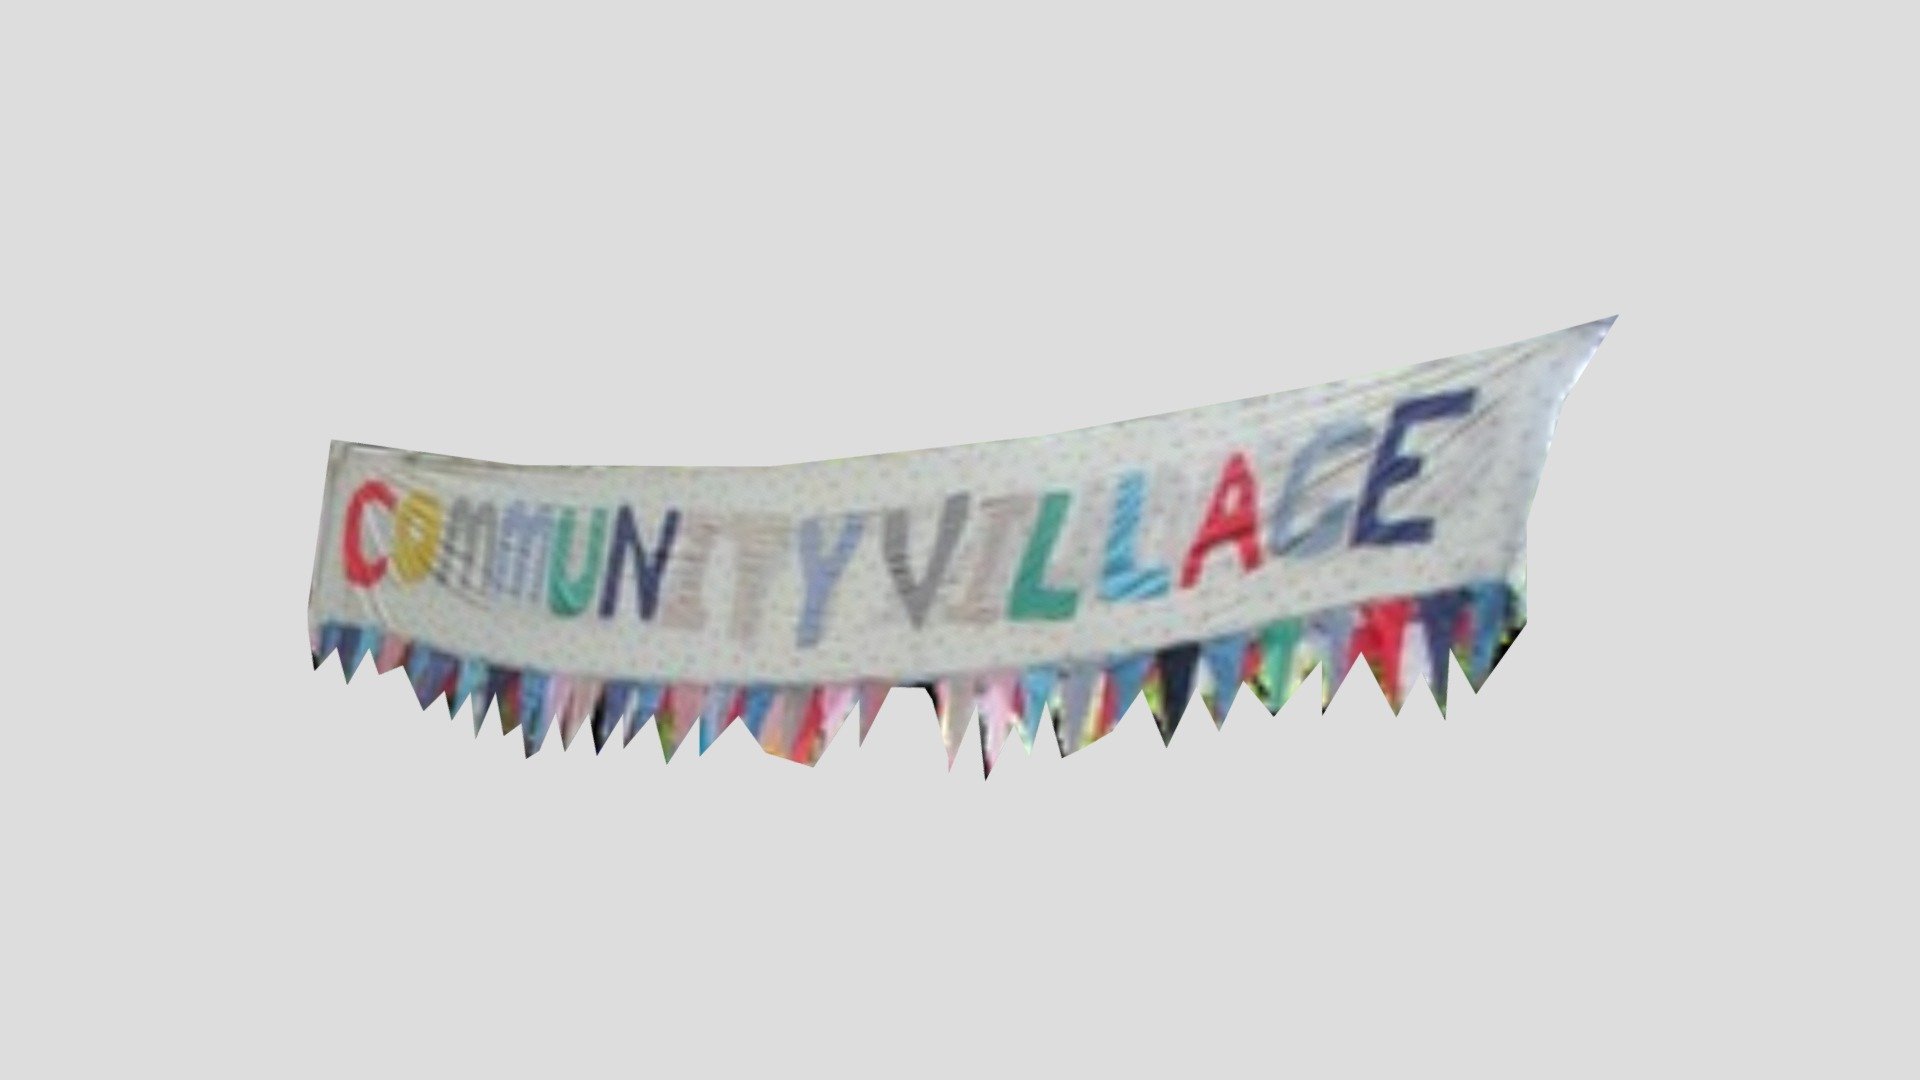 OCF Community Village Sign